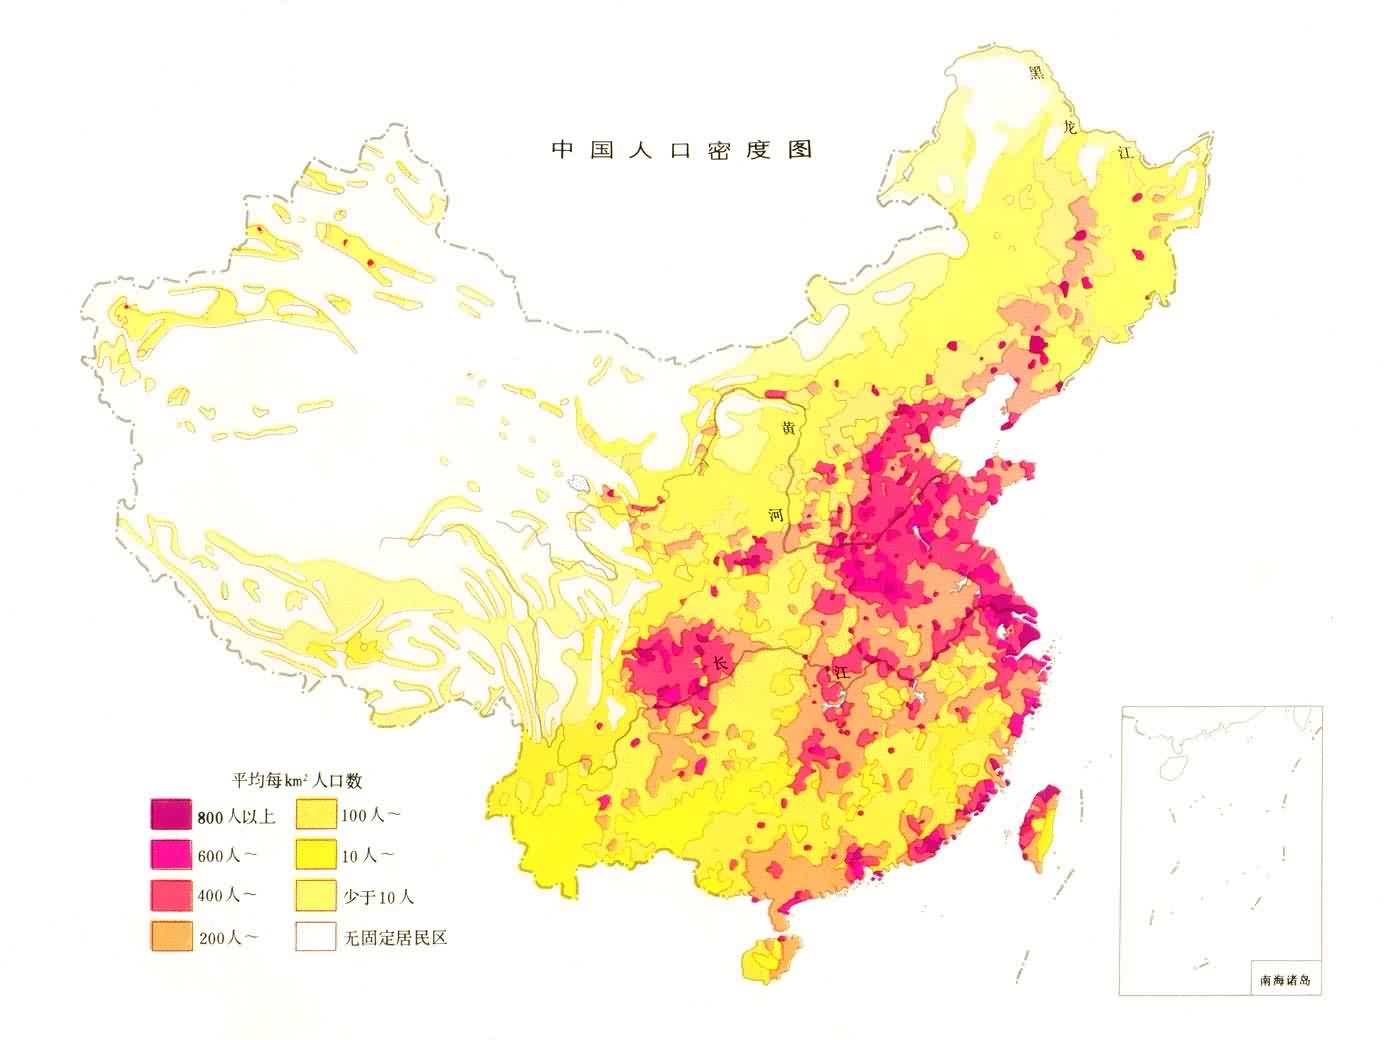 中國人口密度